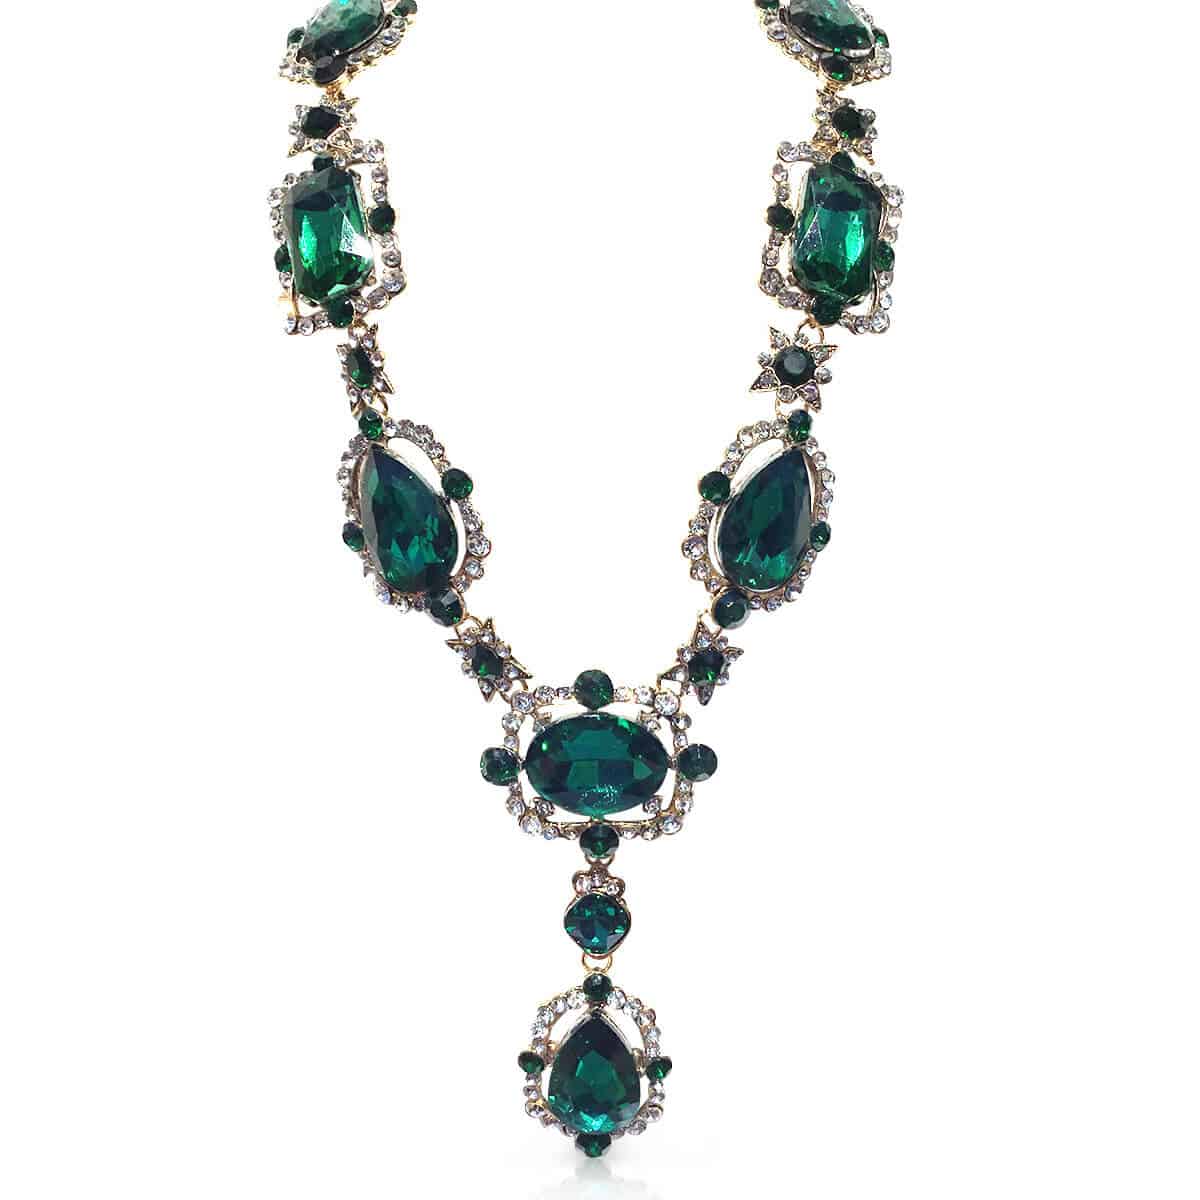 Emerald Green Crystal Glass Necklace by Oscar de la Renta